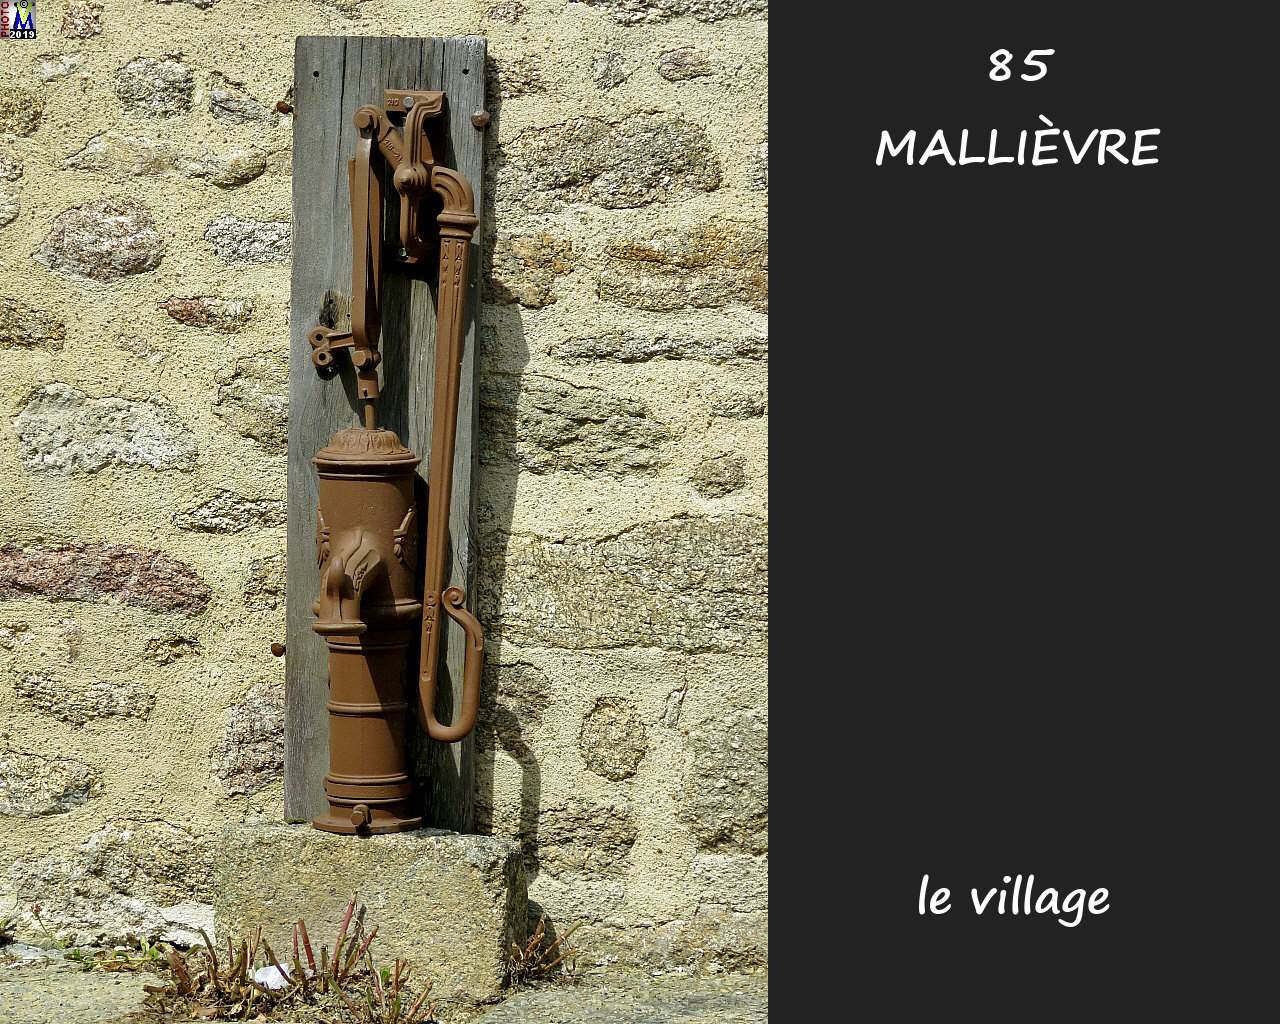 85MALLIEVRE_village_1040.jpg